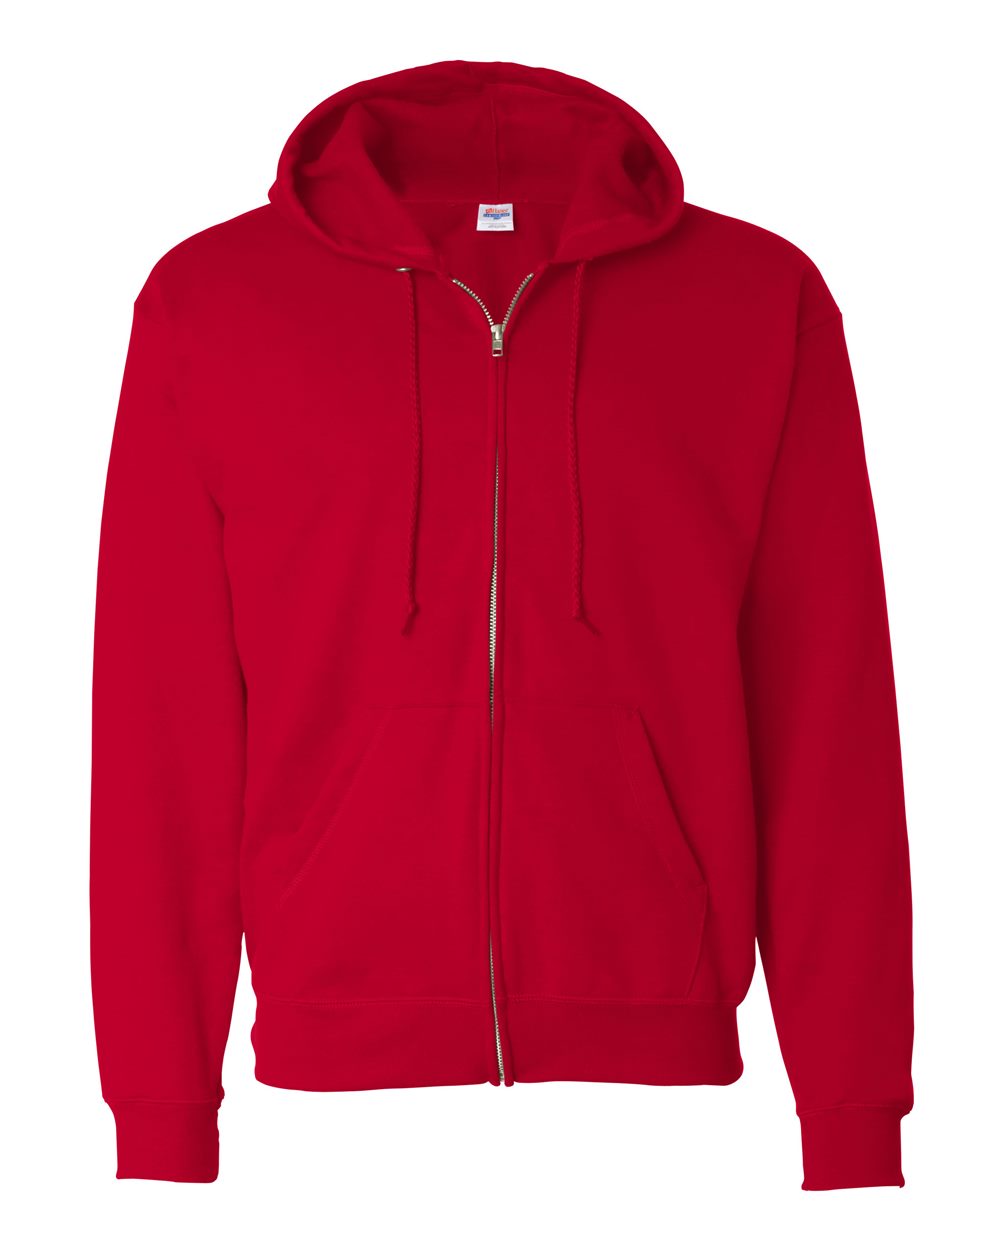 Ecosmart® Full-Zip Hooded Sweatshirt